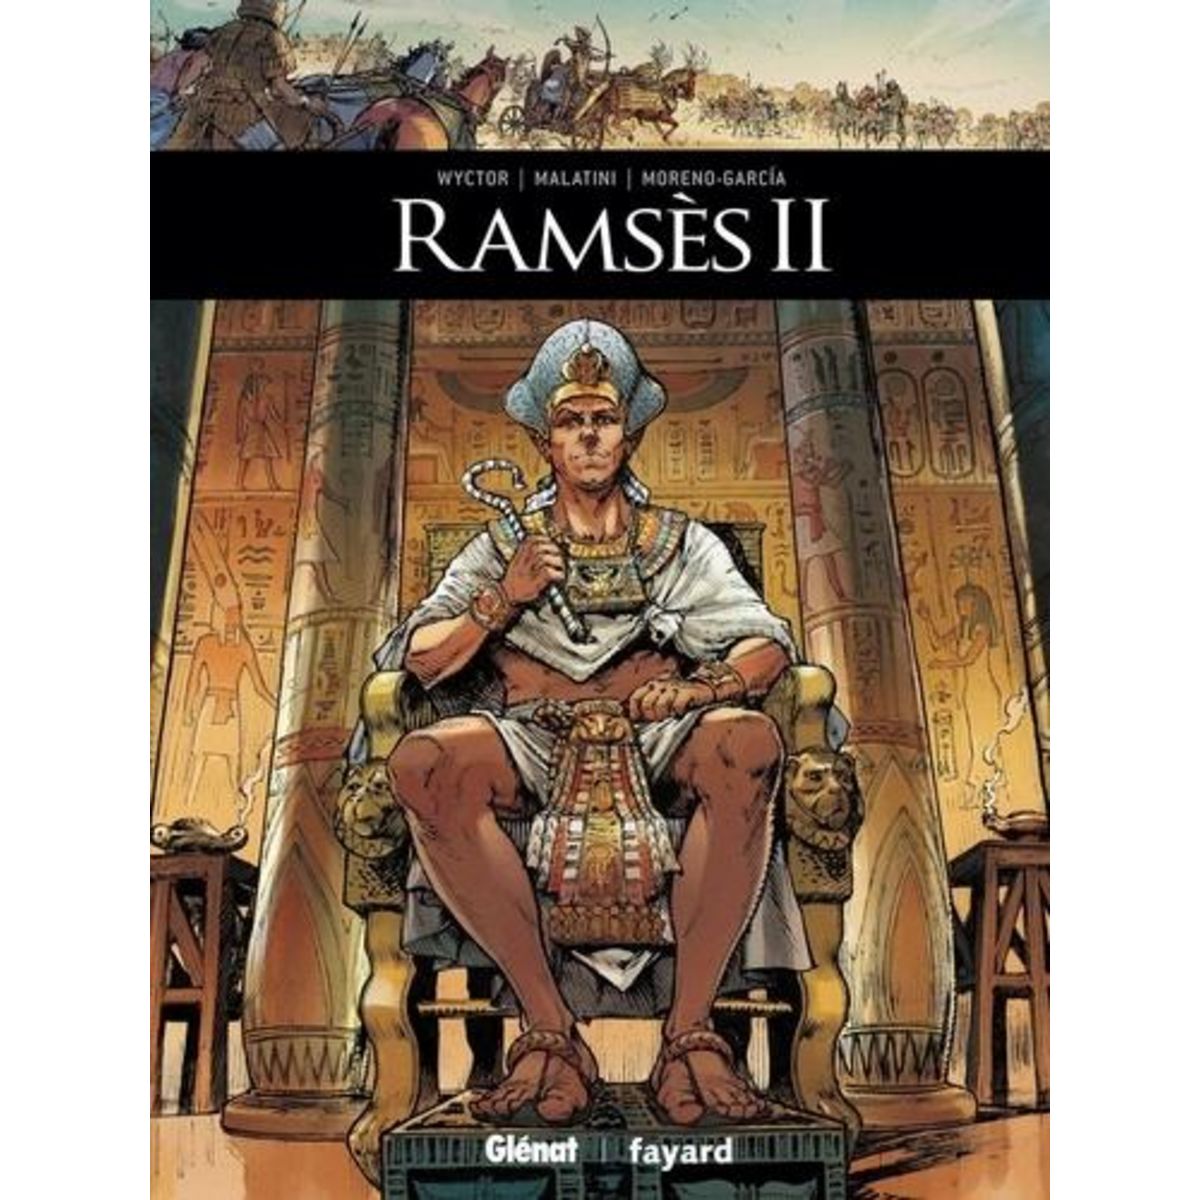  RAMSES II, Wyctor